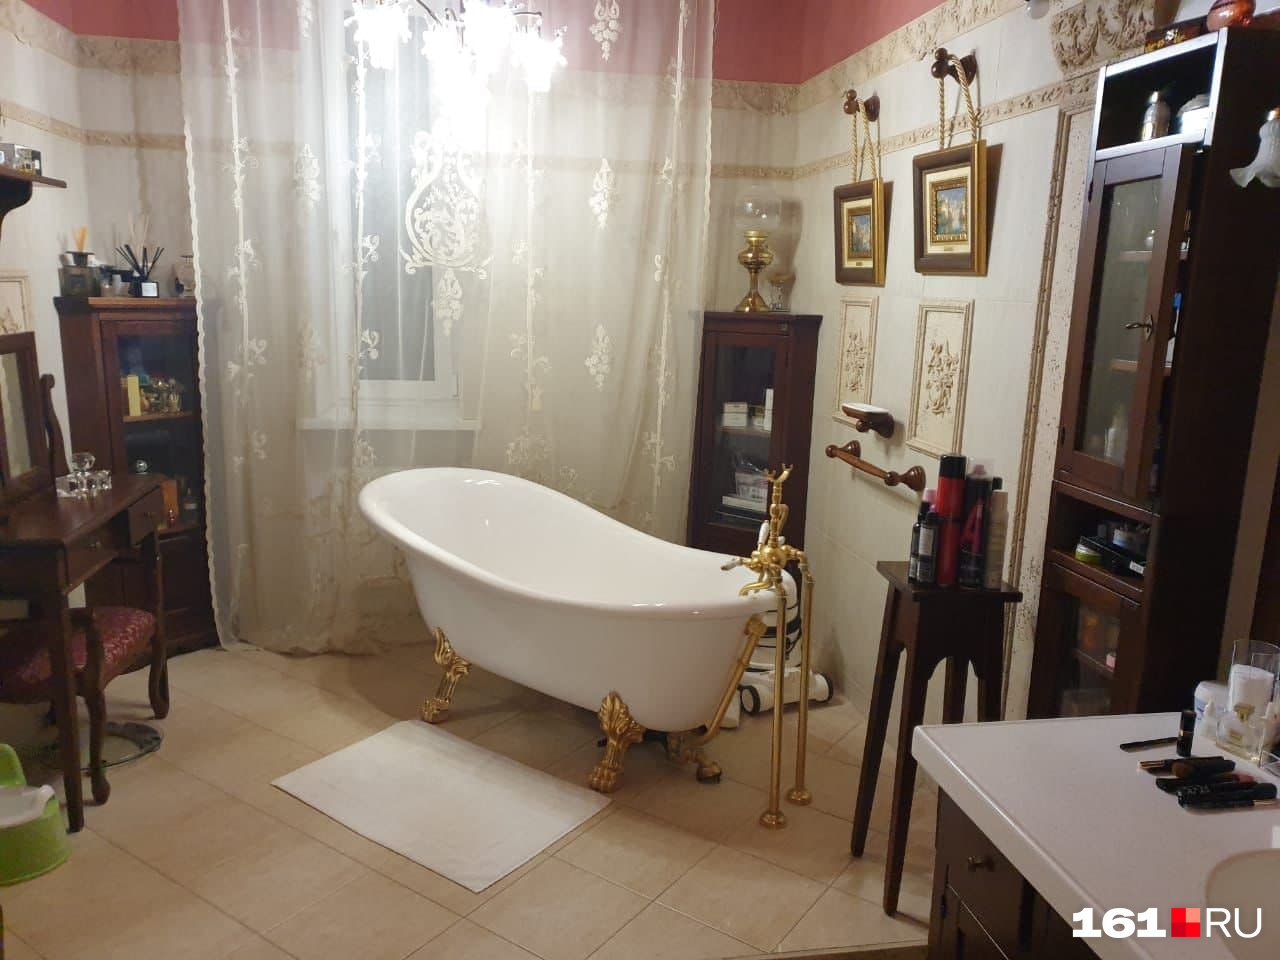 Ванная комната в старинном стиле